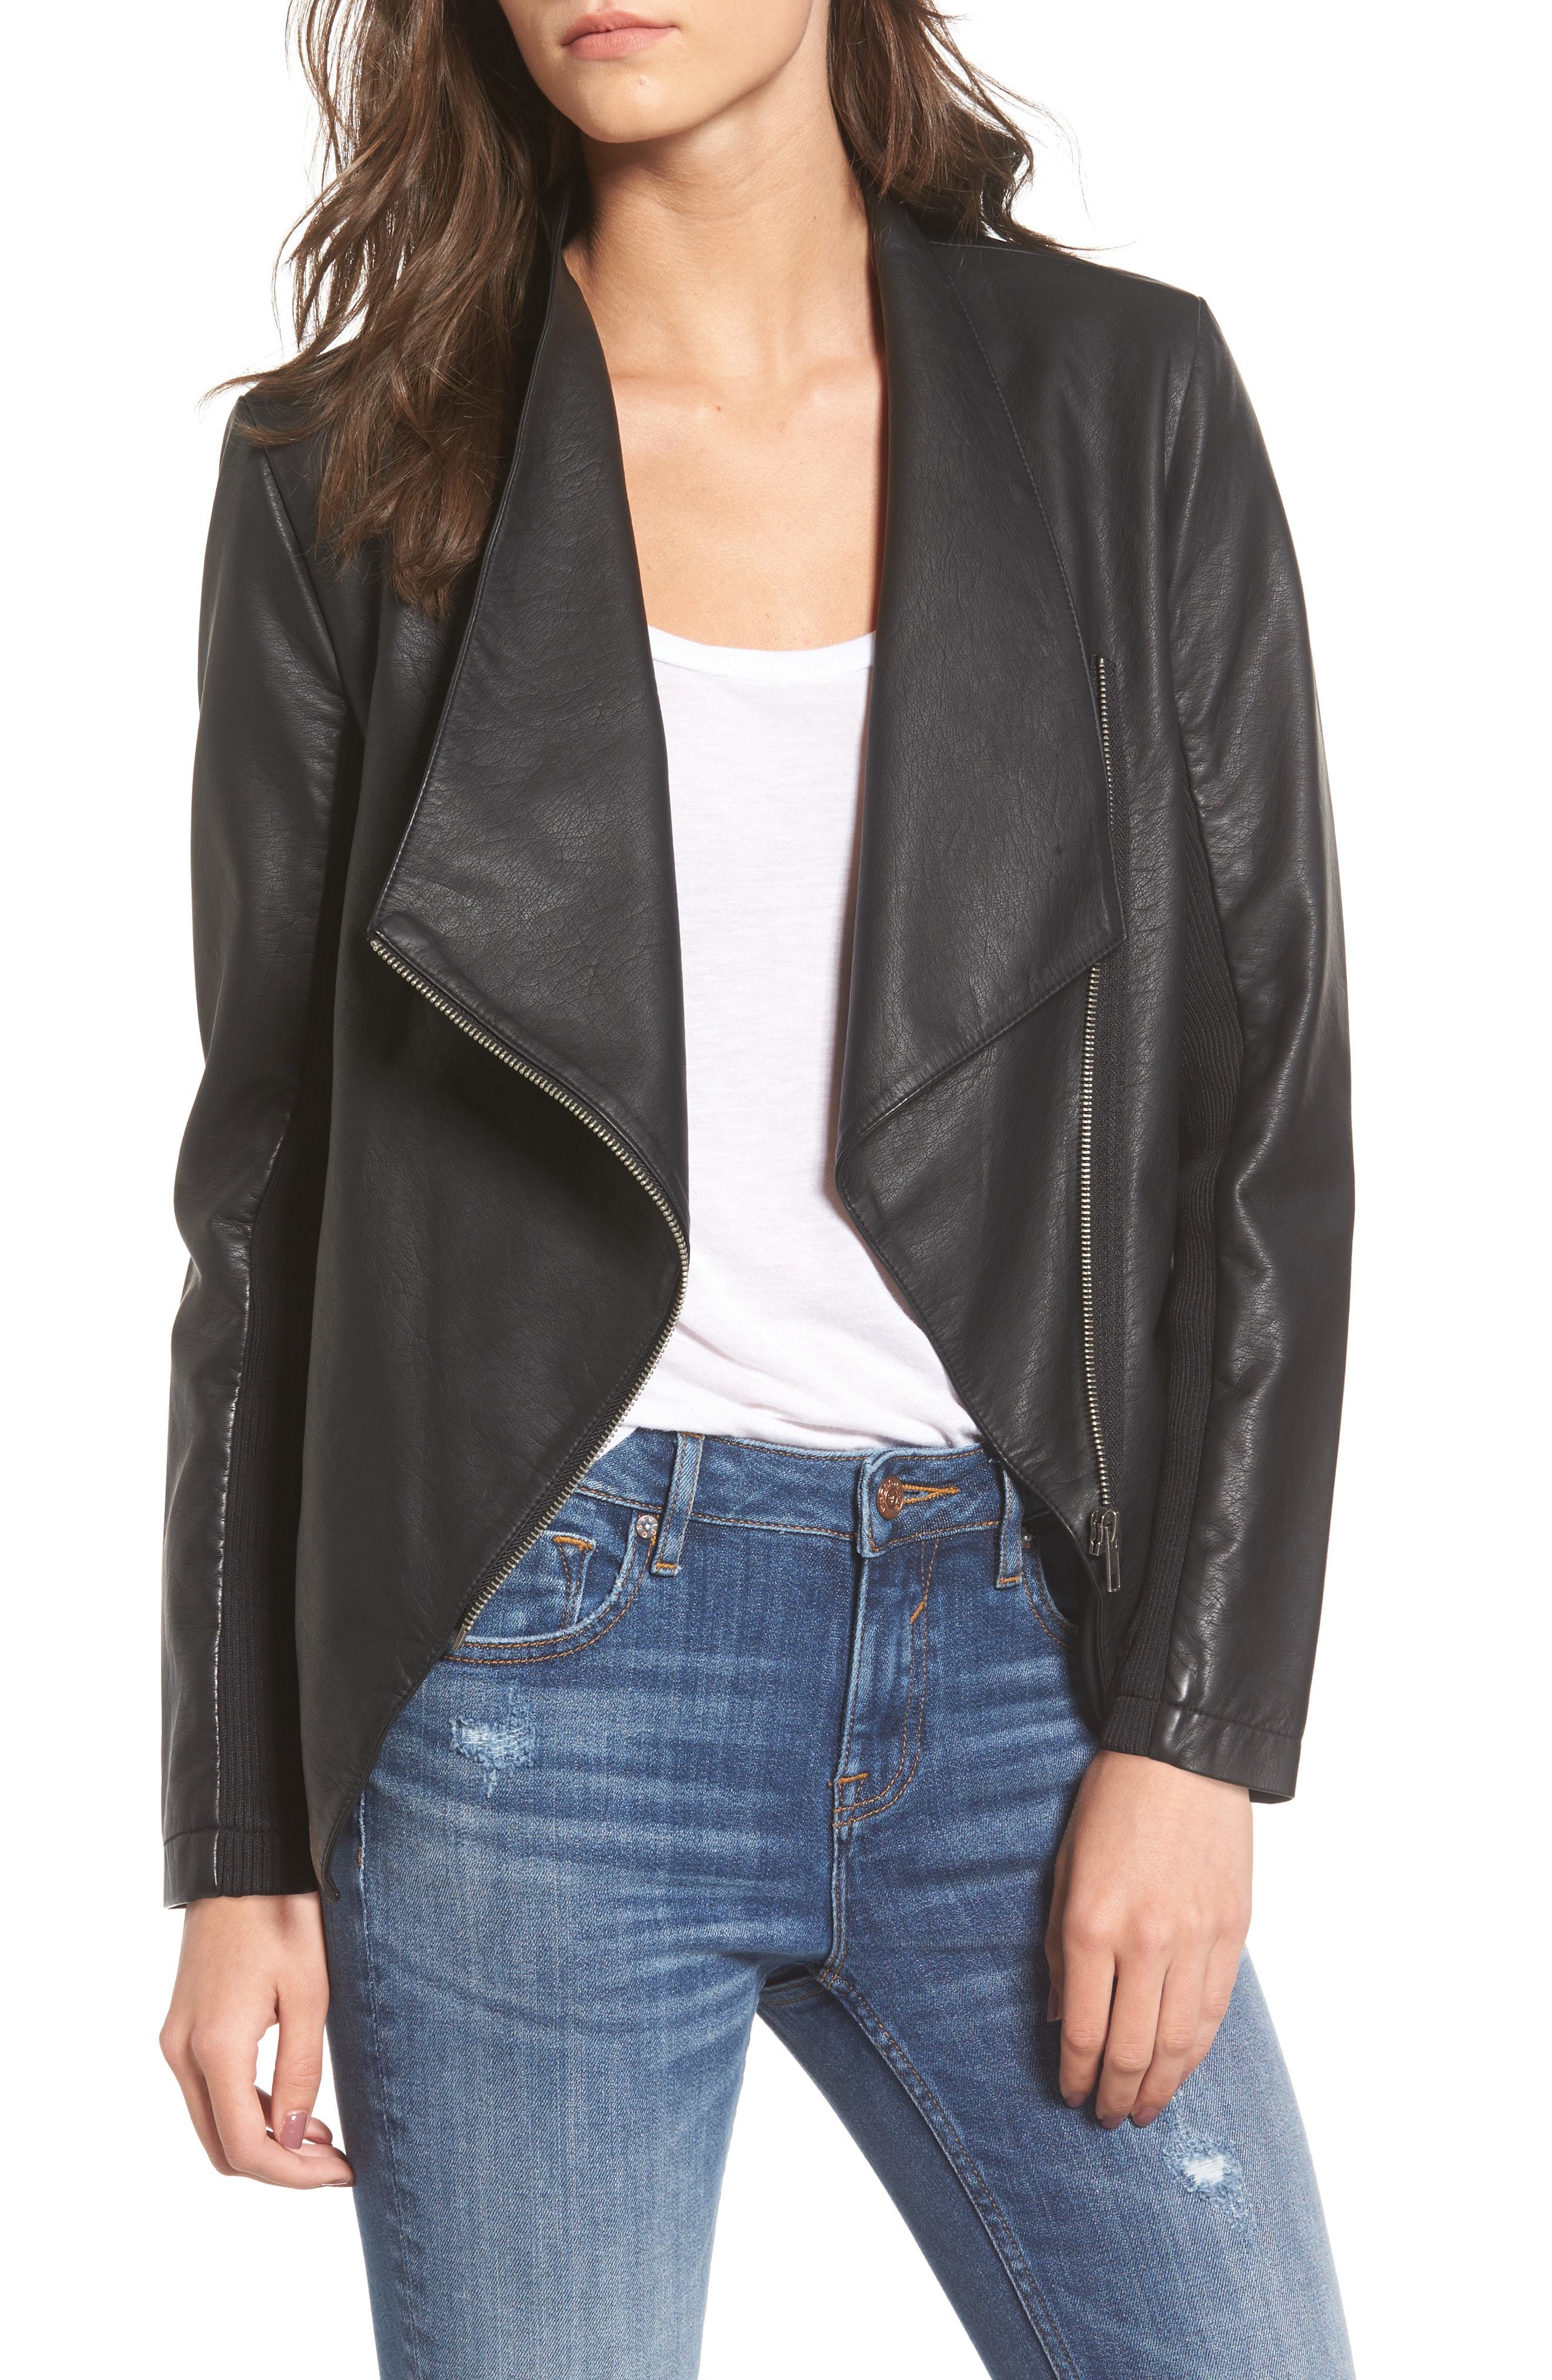 BB Dakota Gabrielle Faux Leather Asymmetrical Jacket, $105